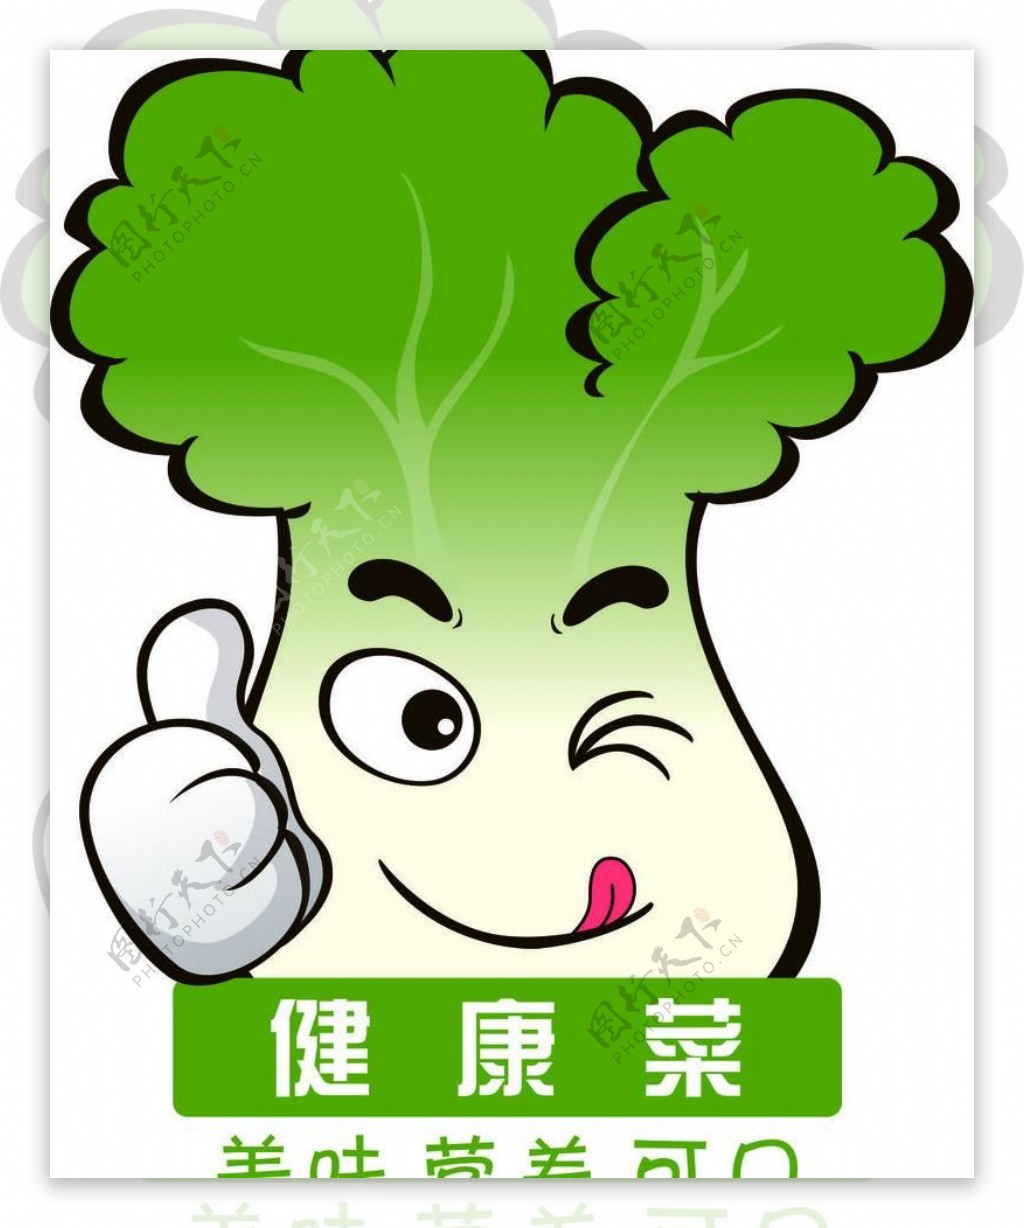 健康菜logo图片